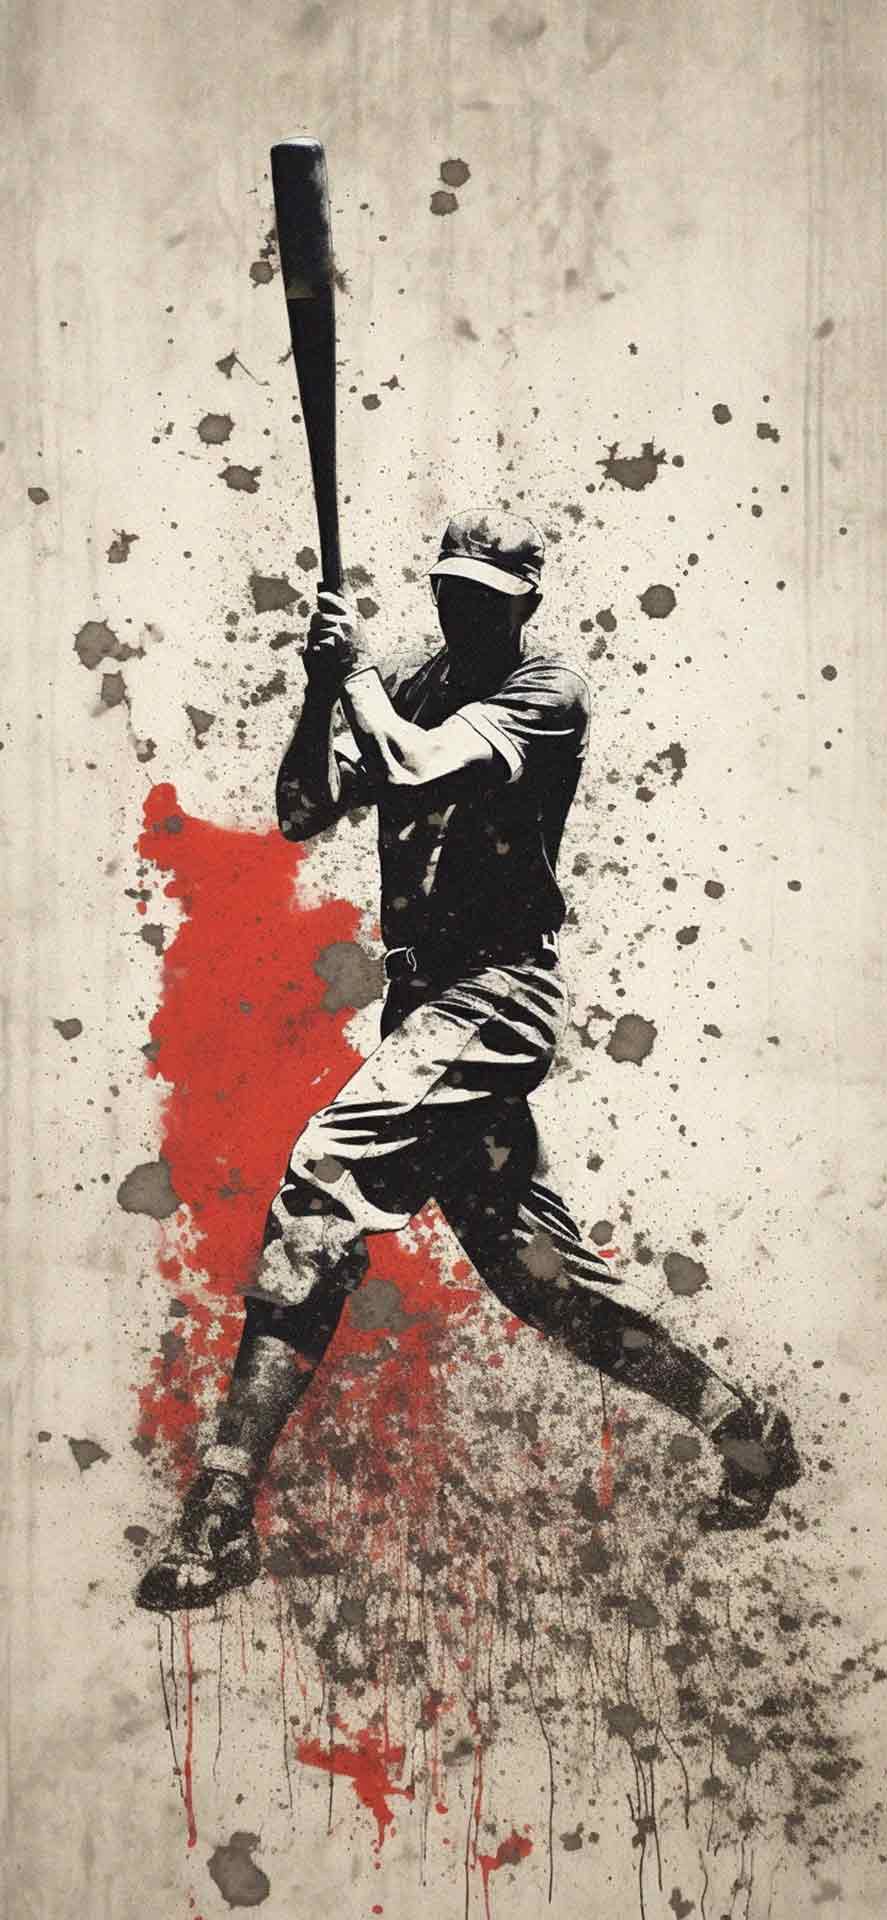 棒球涂鸦艺术壁纸